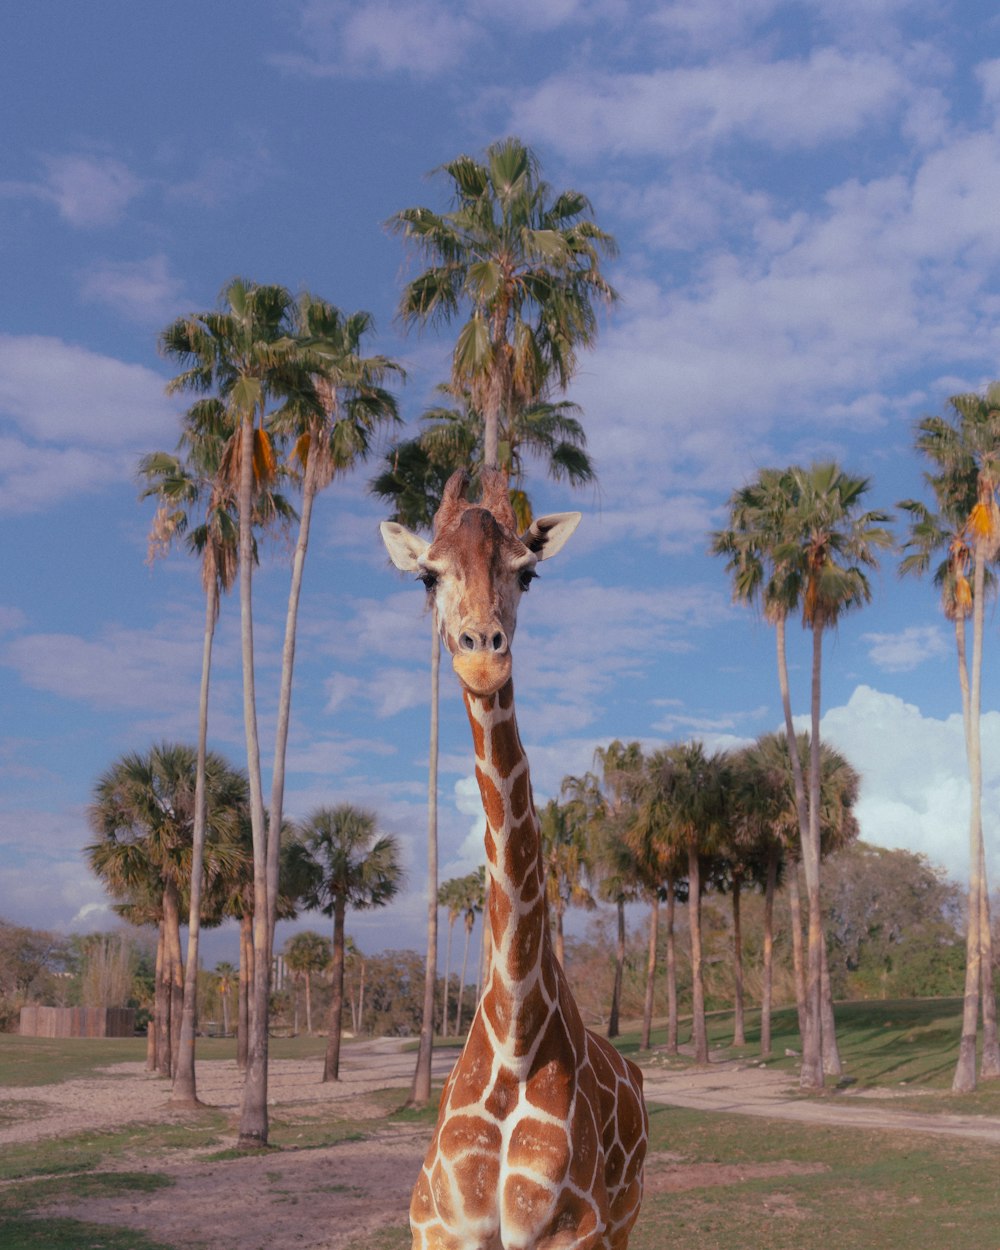 Une girafe debout dans un champ avec des palmiers